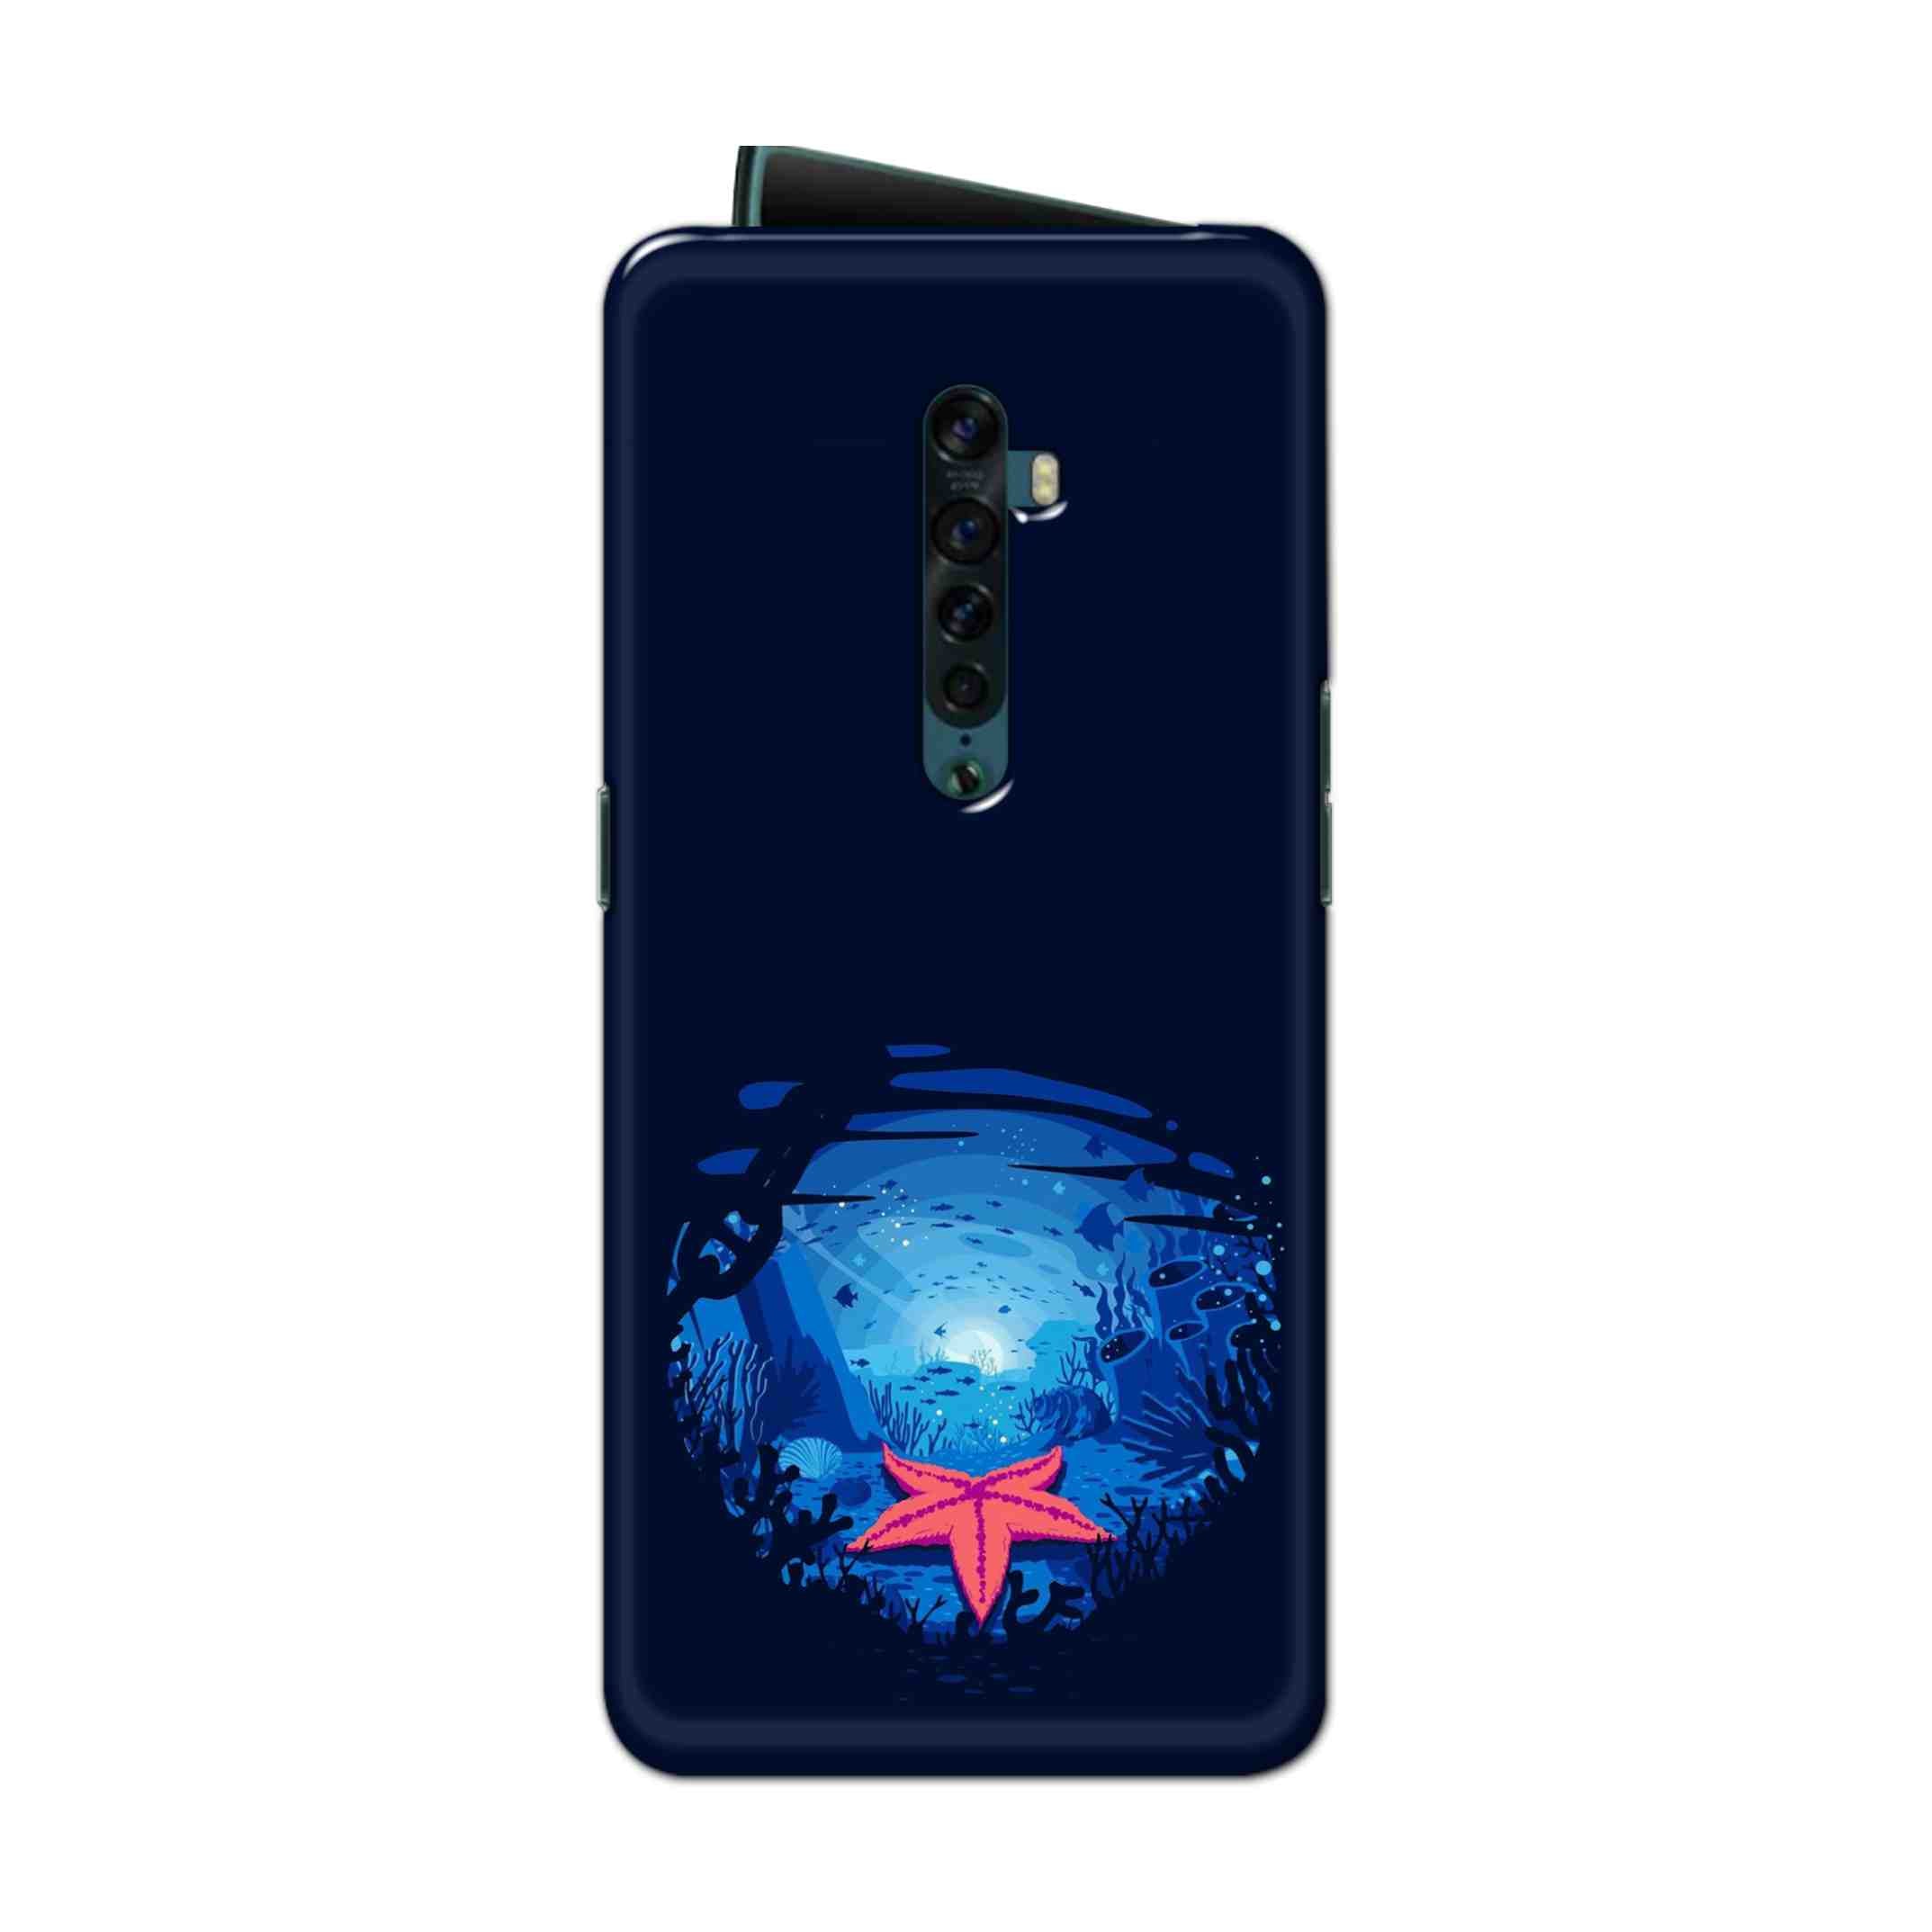 Buy Star Fresh Hard Back Mobile Phone Case Cover For Oppo Reno 2 Online